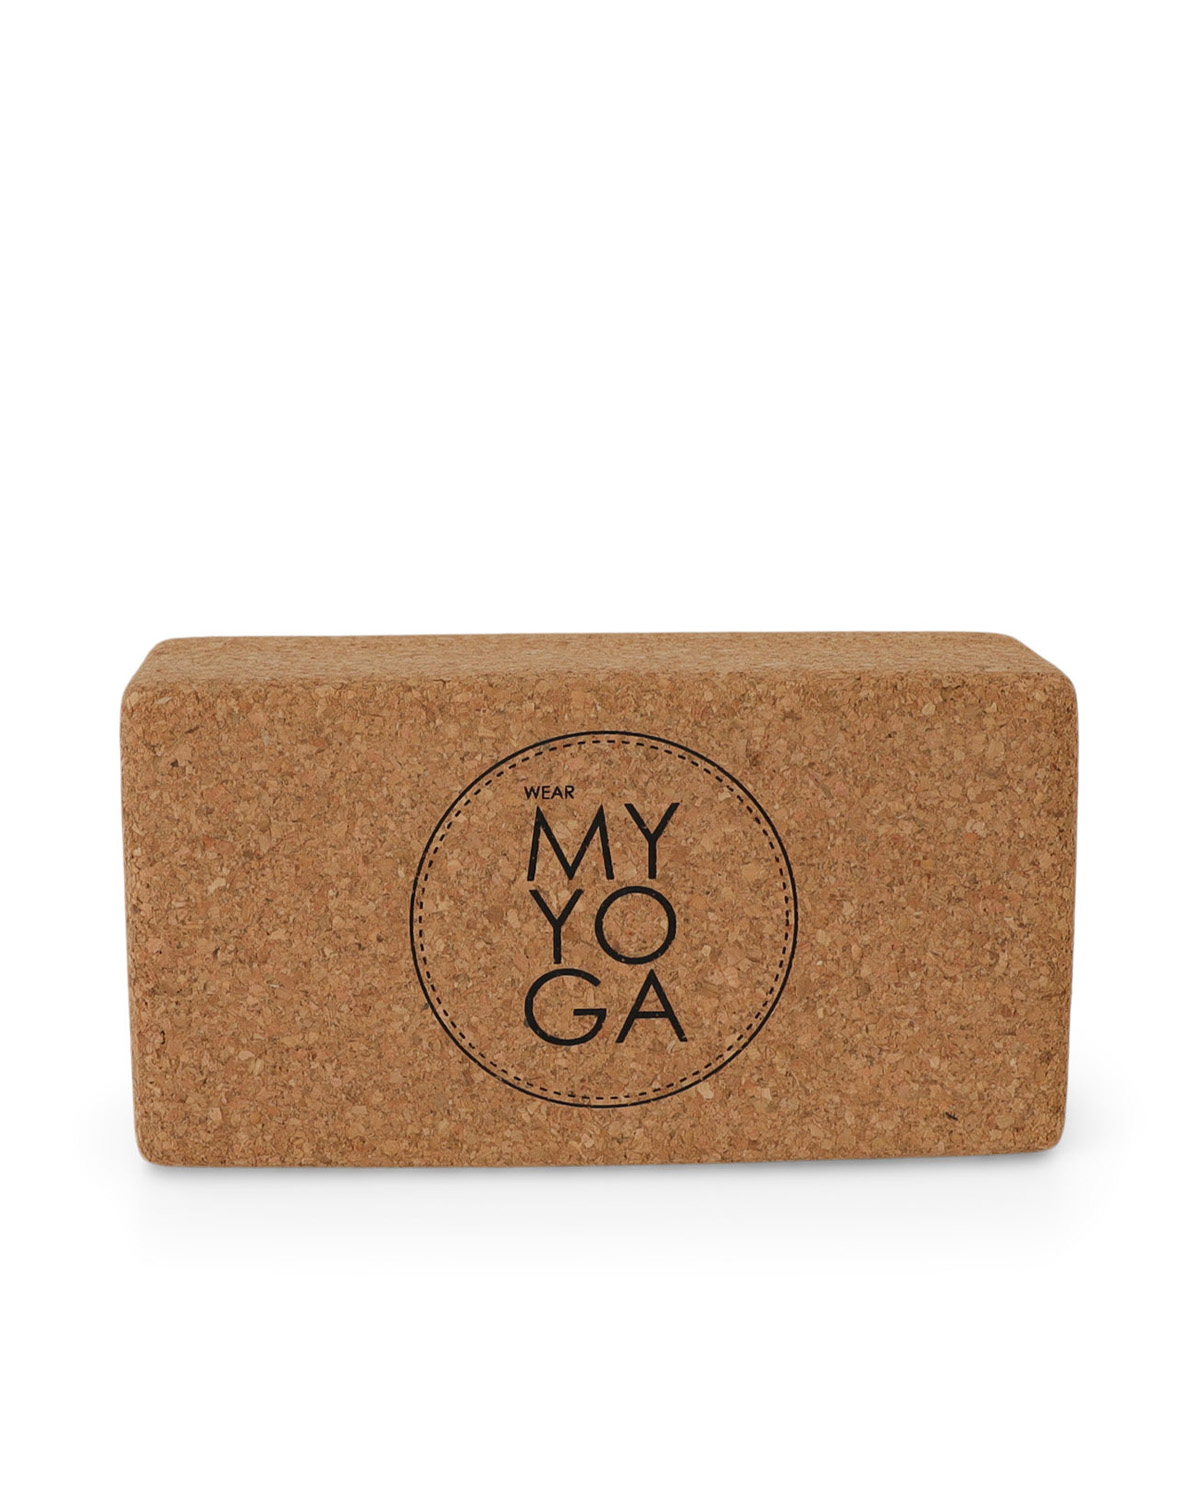 Yoga Cork Block - WearMyYoga Yoga Cork Block - WearMyYoga